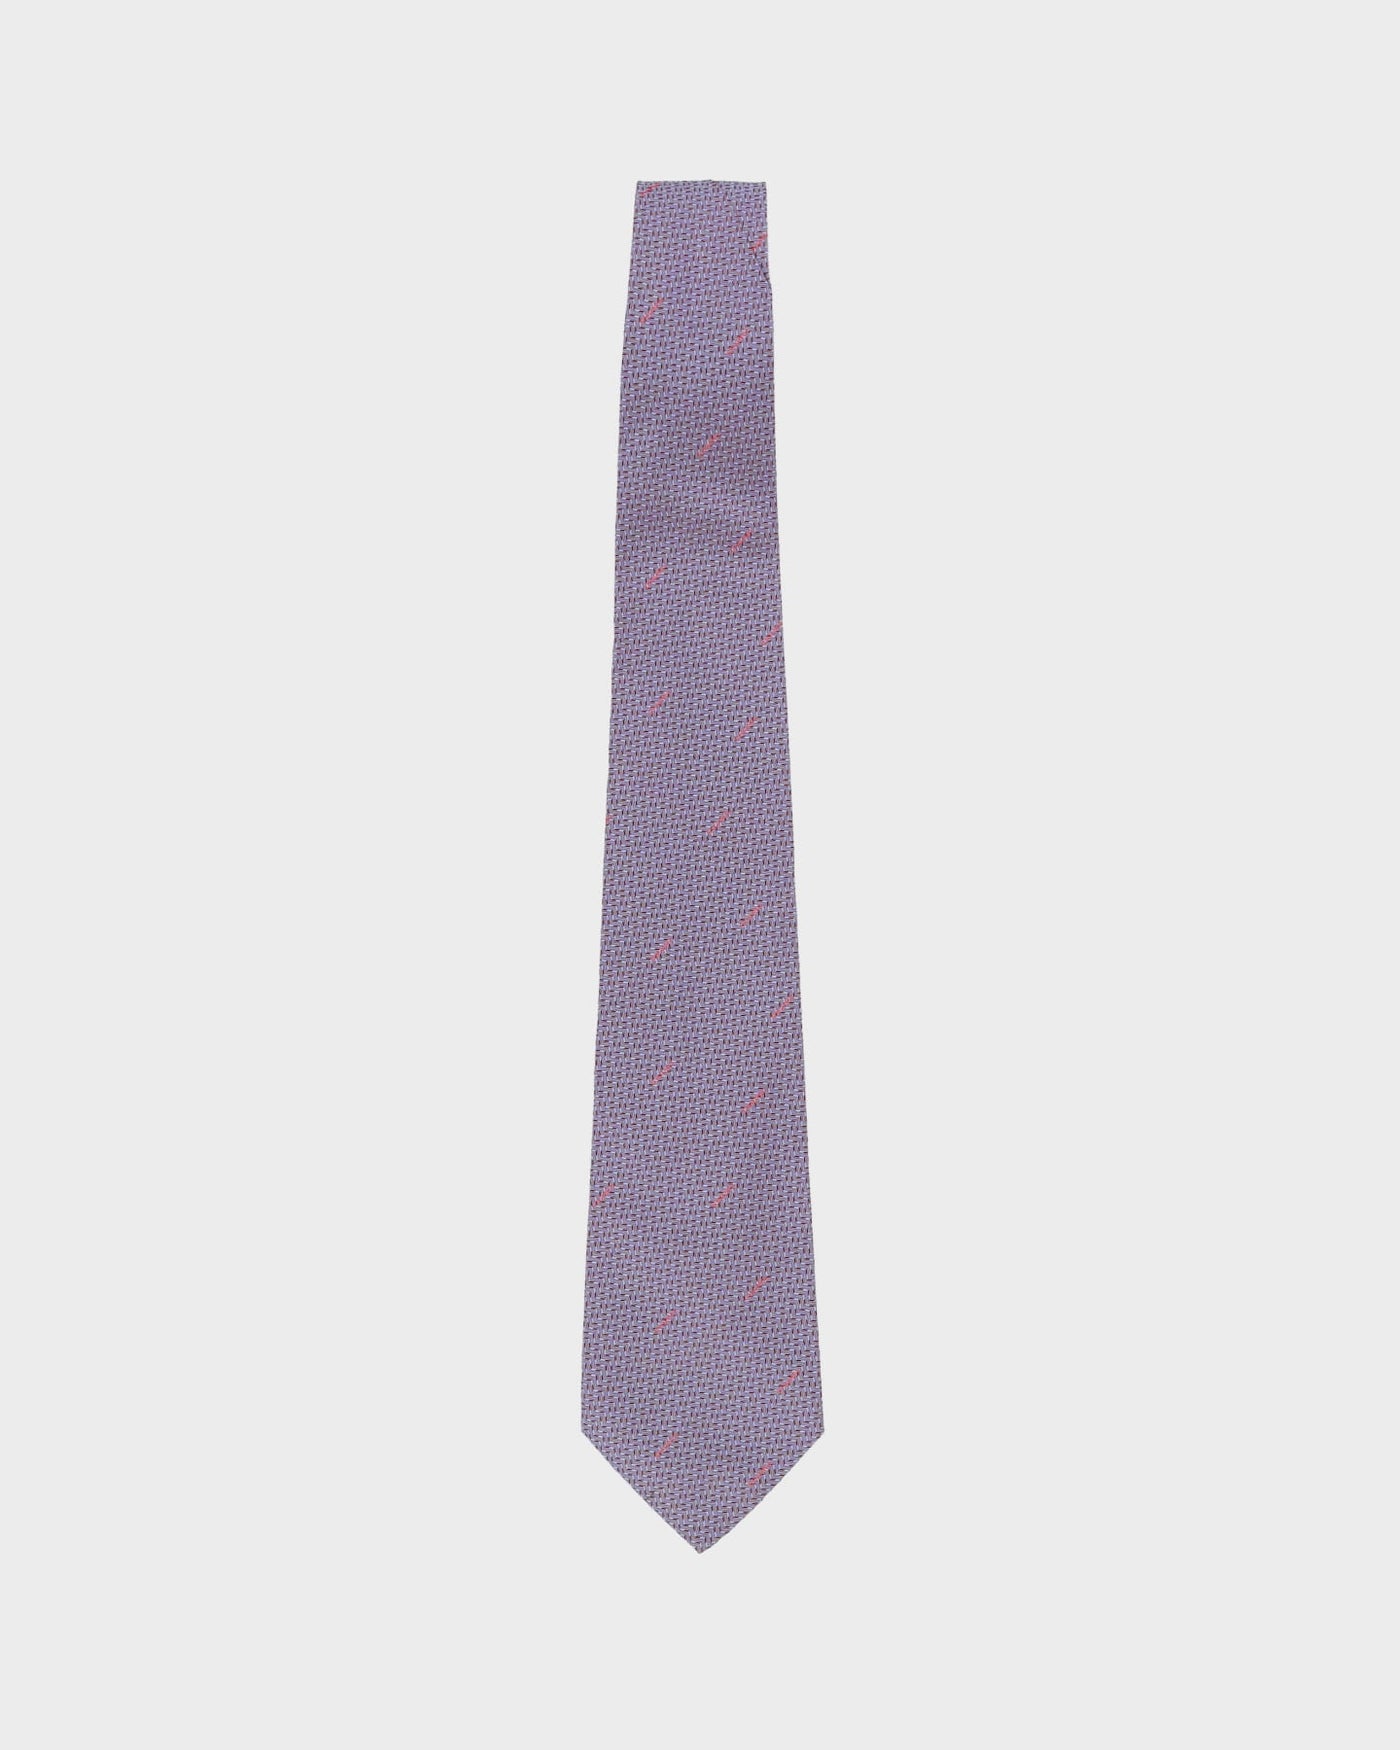 90s Chanel Purple Patterned Silk Tie